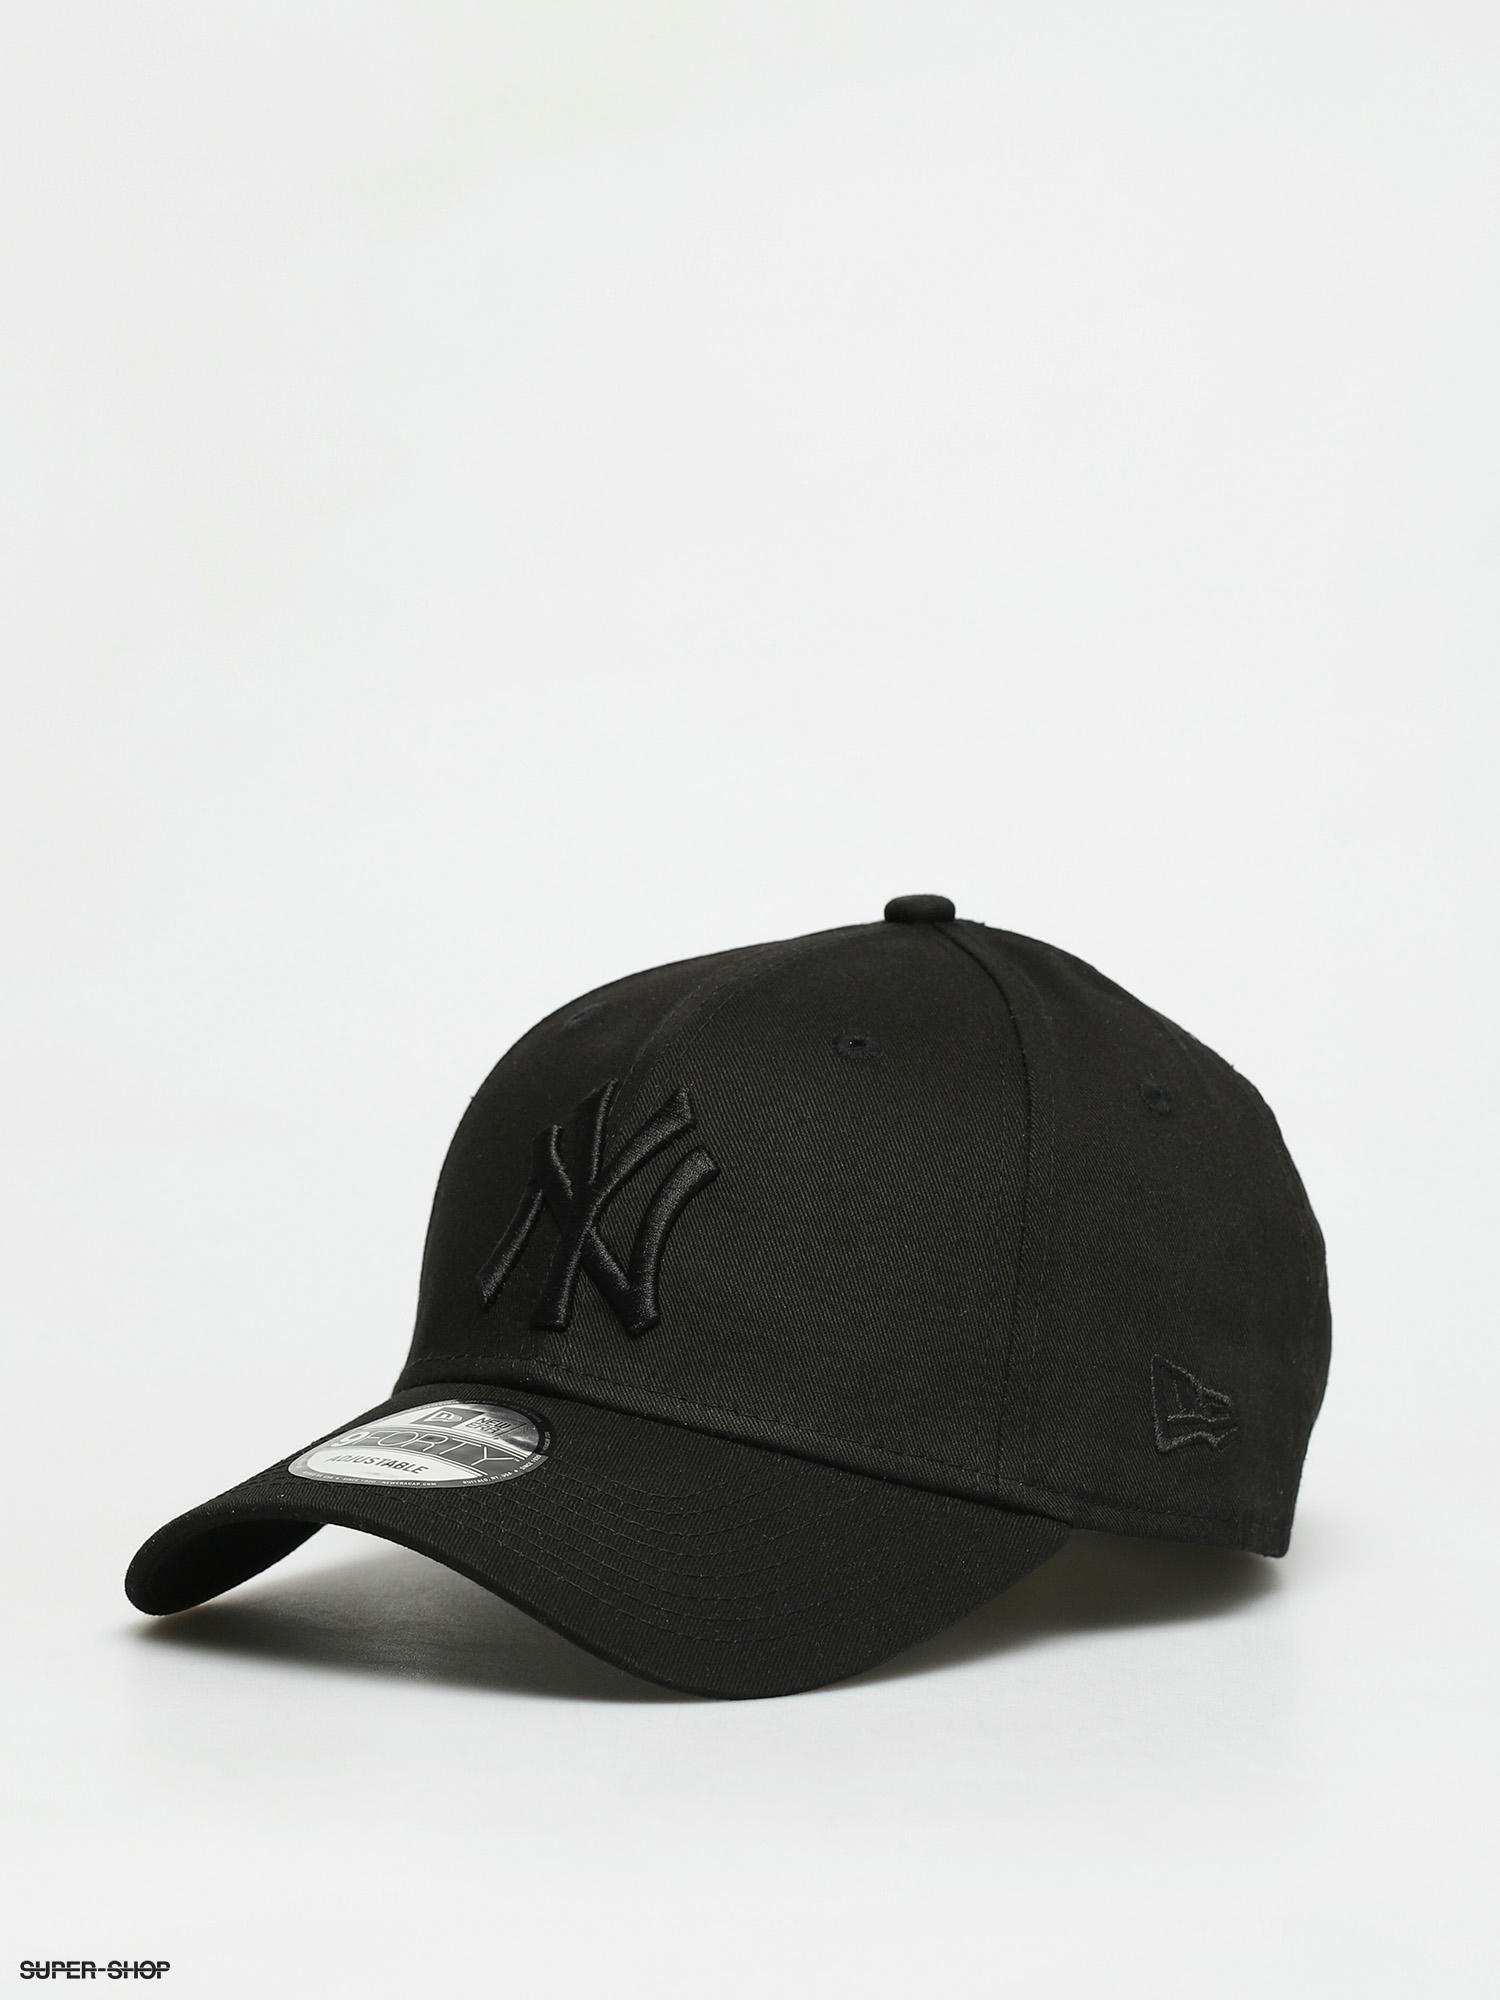 47 Brand MLB NY Black Cap